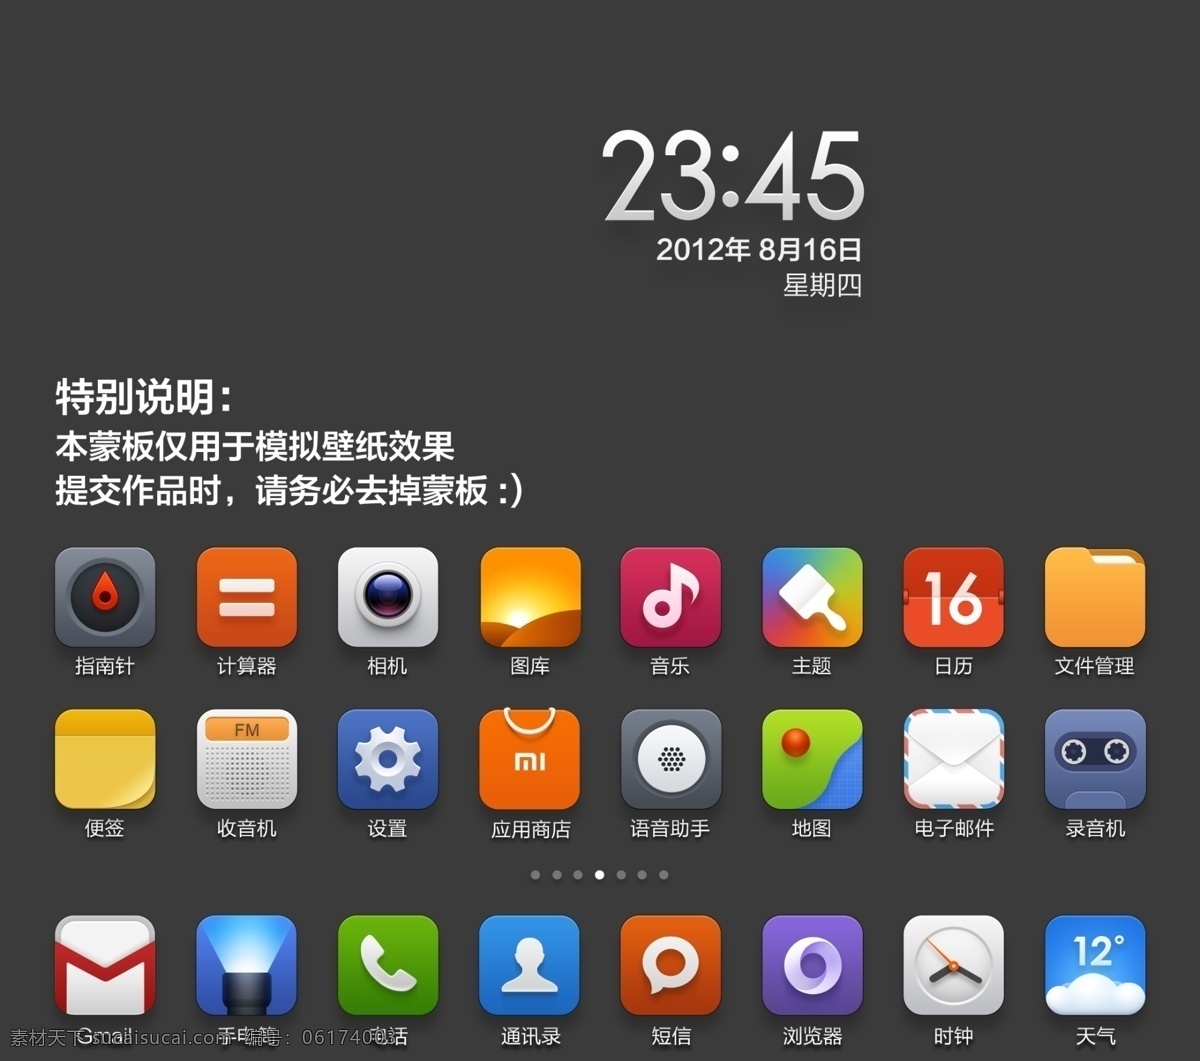 小米 主题 app miui ui 按钮 界面 卡通 时钟 手机 图标 解锁 app界面